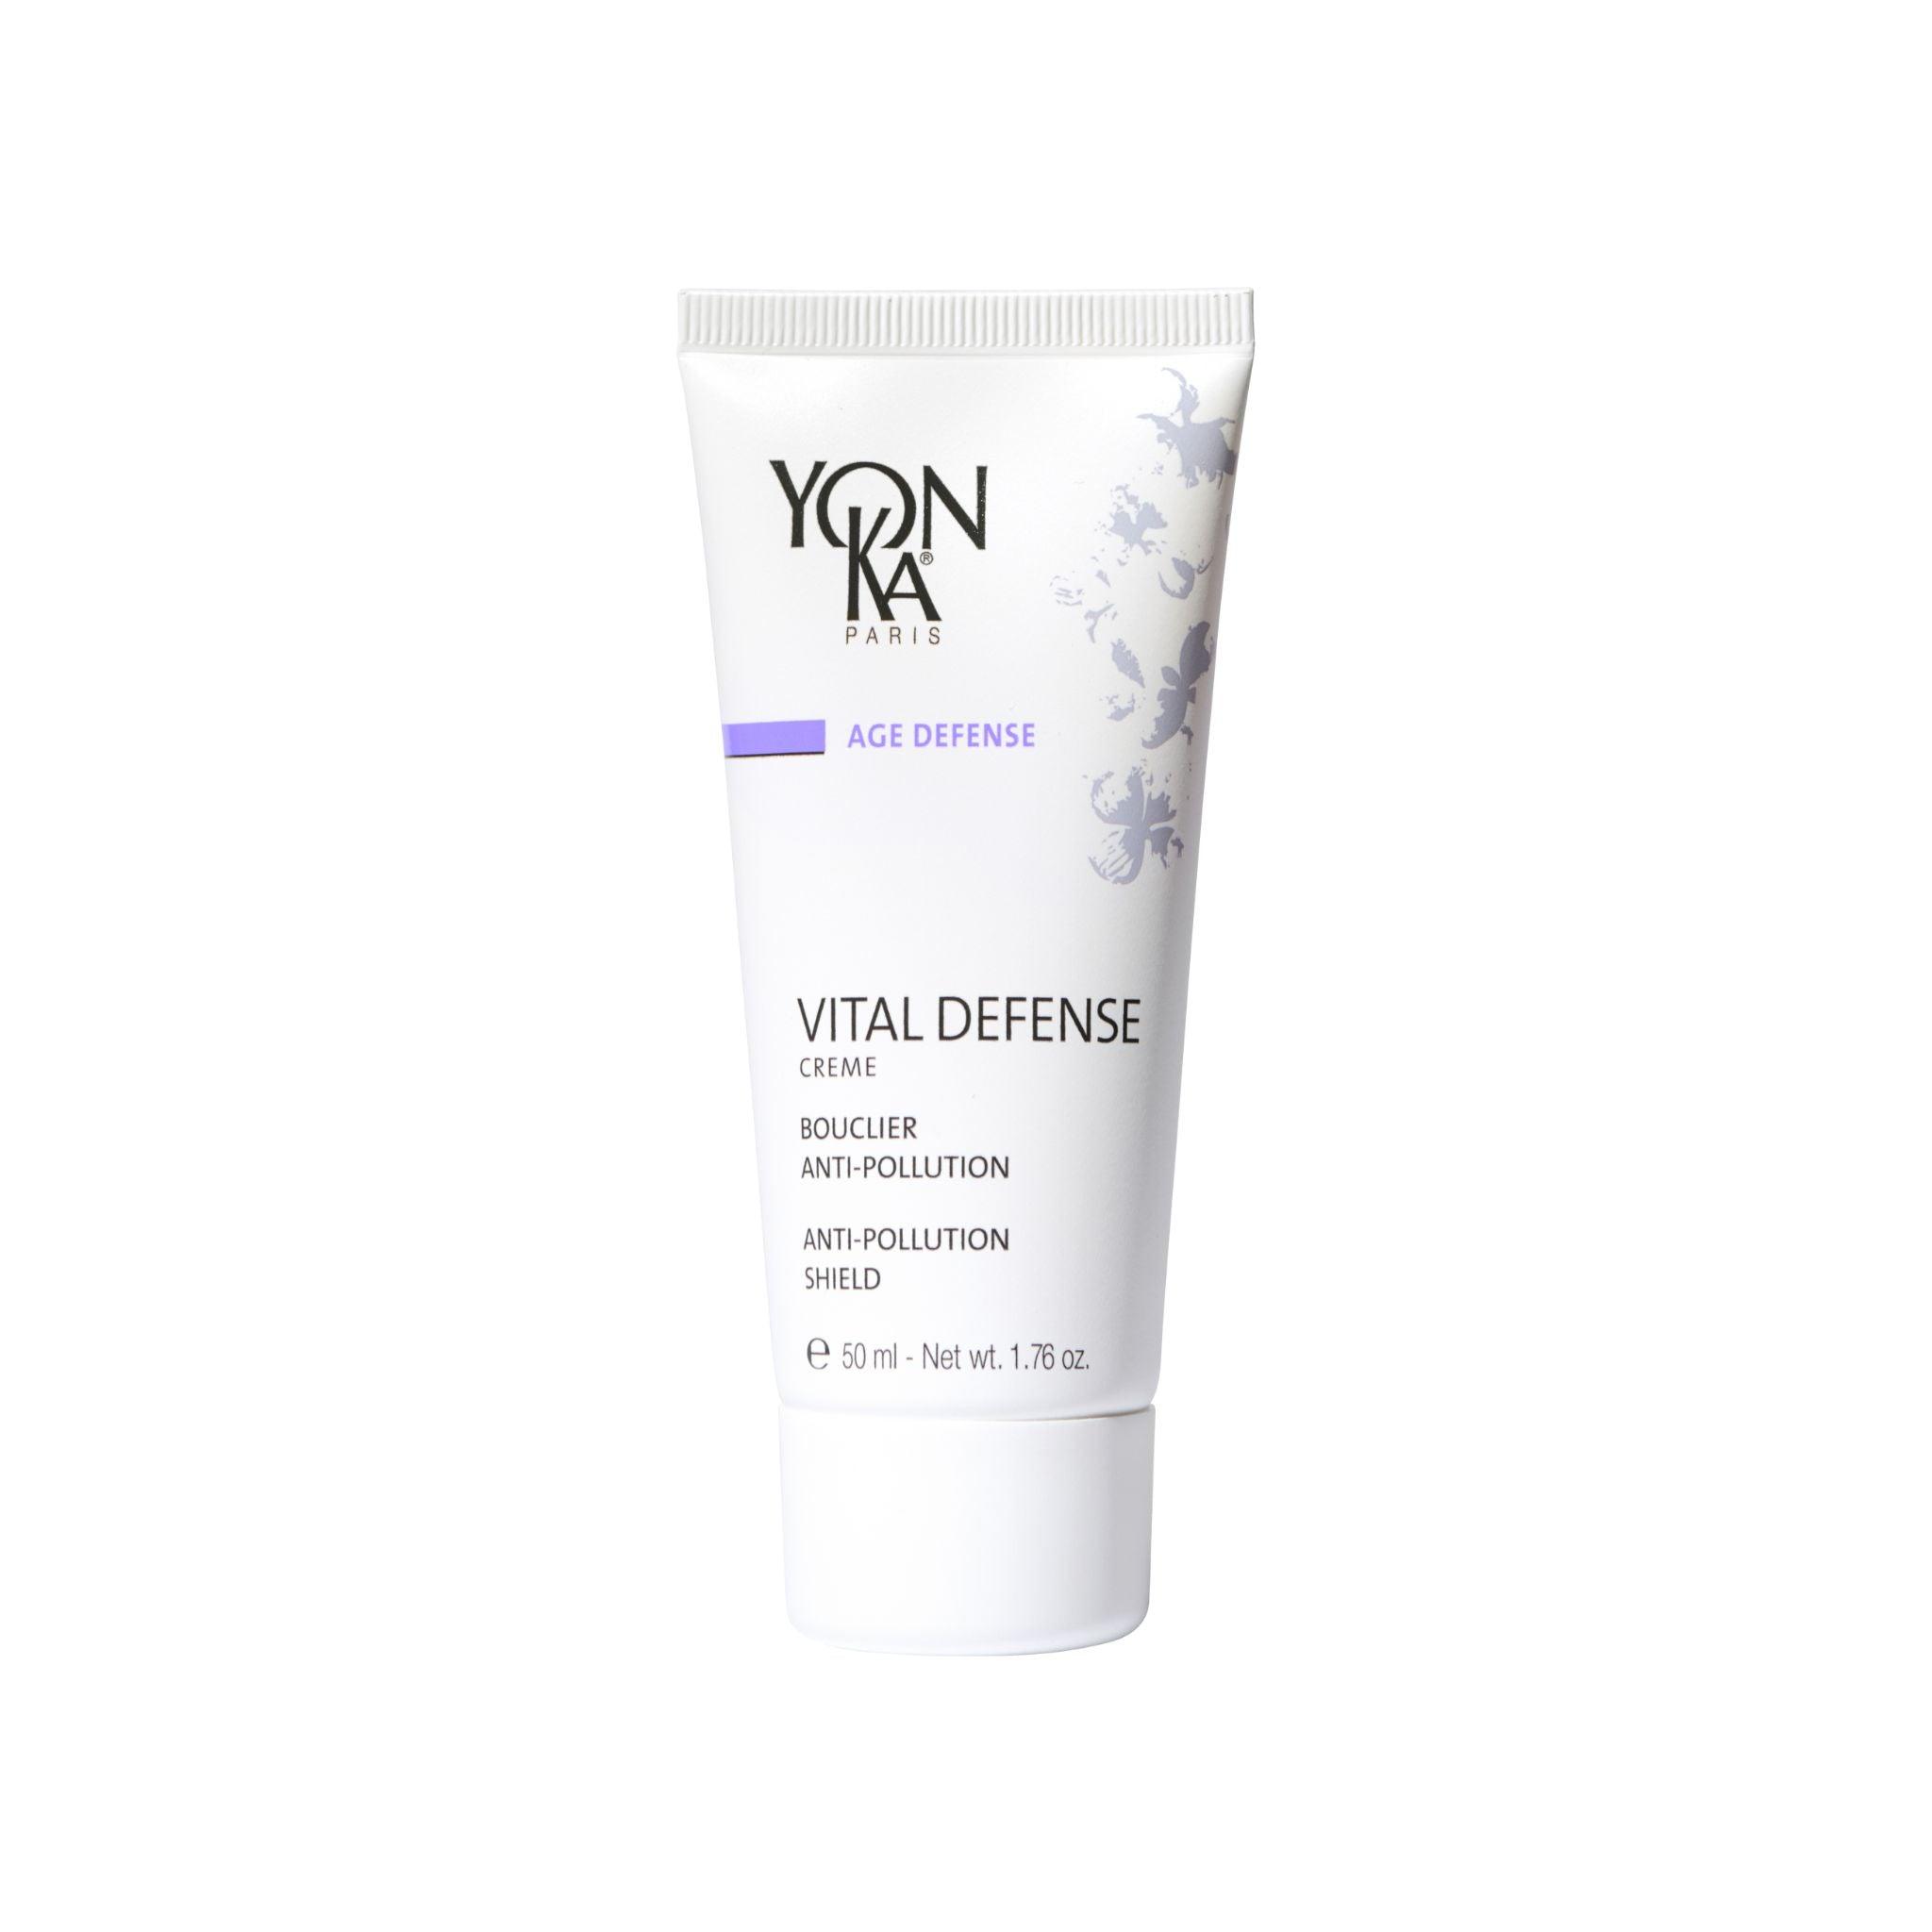 YonKa Vital Defense Creme - The Beauty House Shop